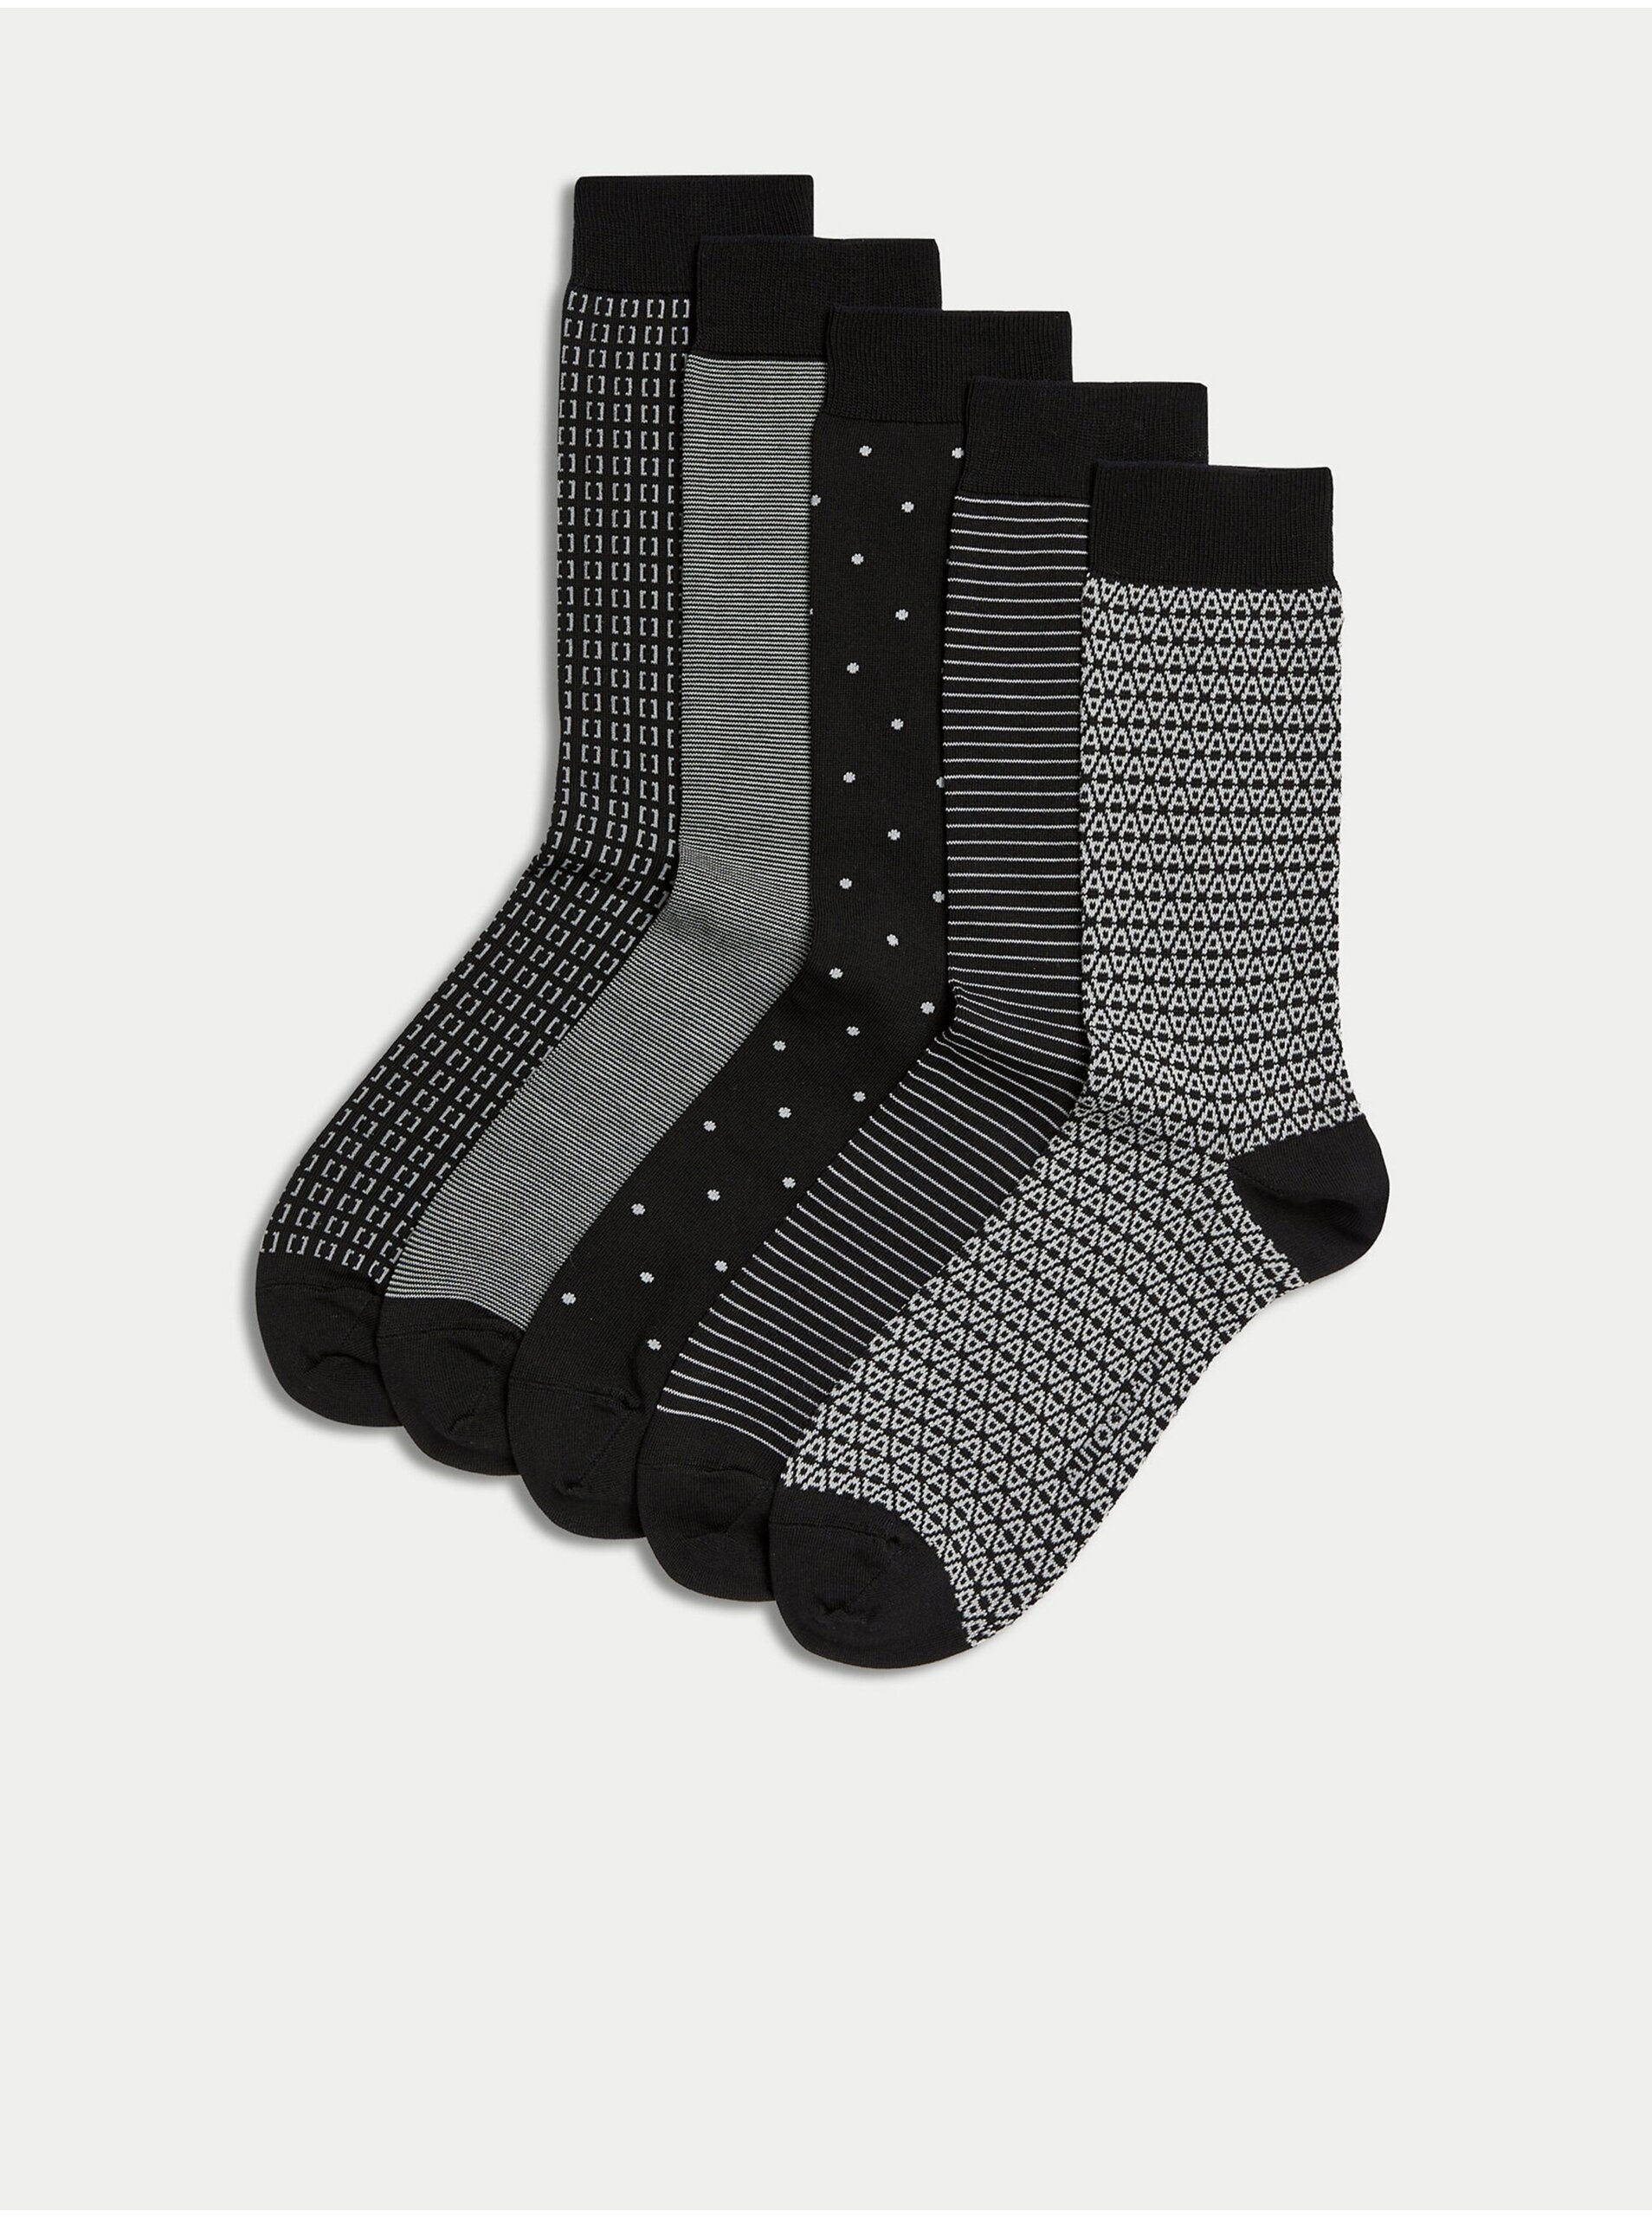 Lacno Súprava piatich párov pánskych ponožiek v čiernej a šedej farbe Marks & Spencer Pima